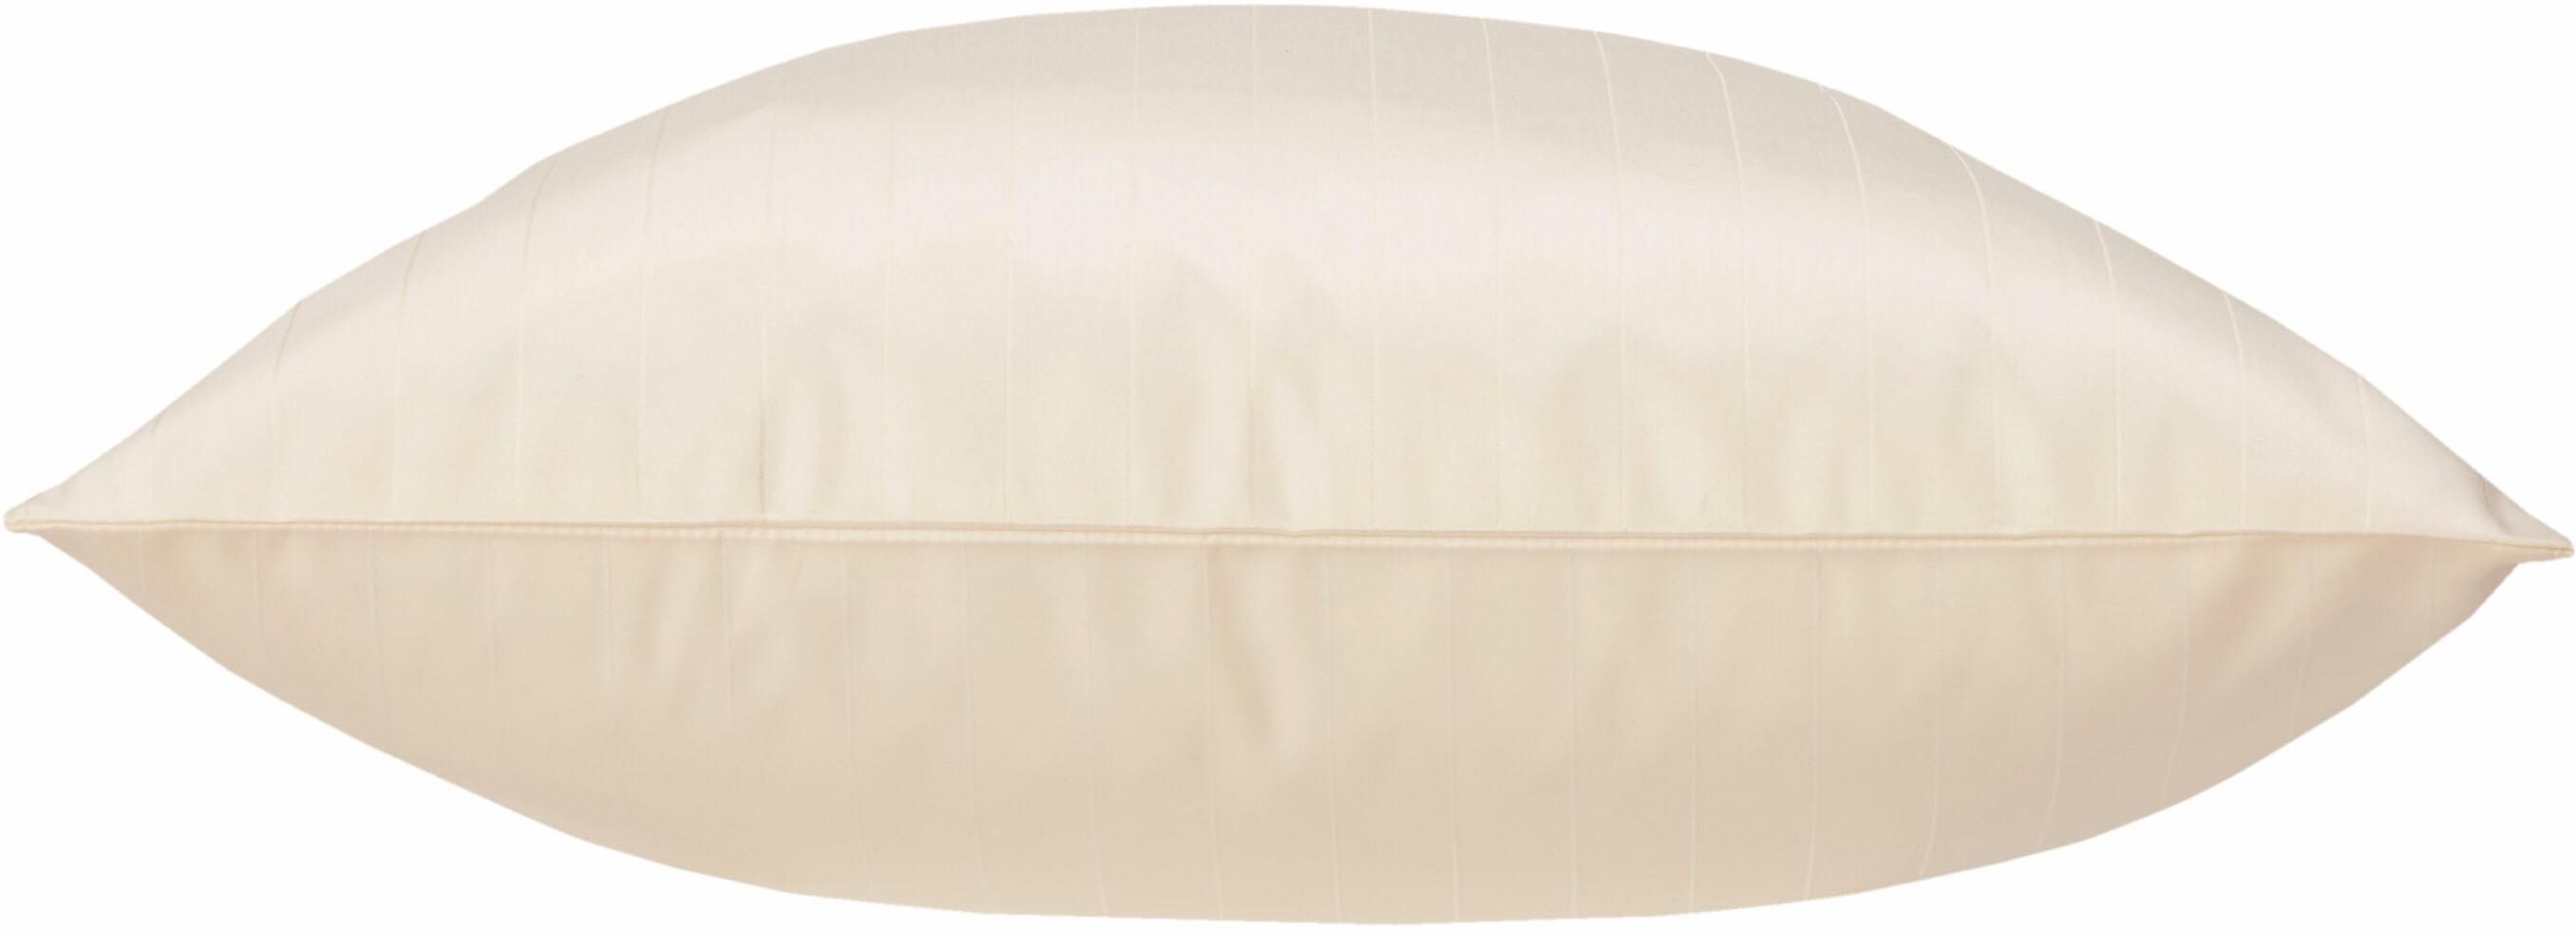 Curt Bauer Kissenbezug »Ferrara«, (1 St.), mit Nadelstreifen beige  1x 80x40 cm